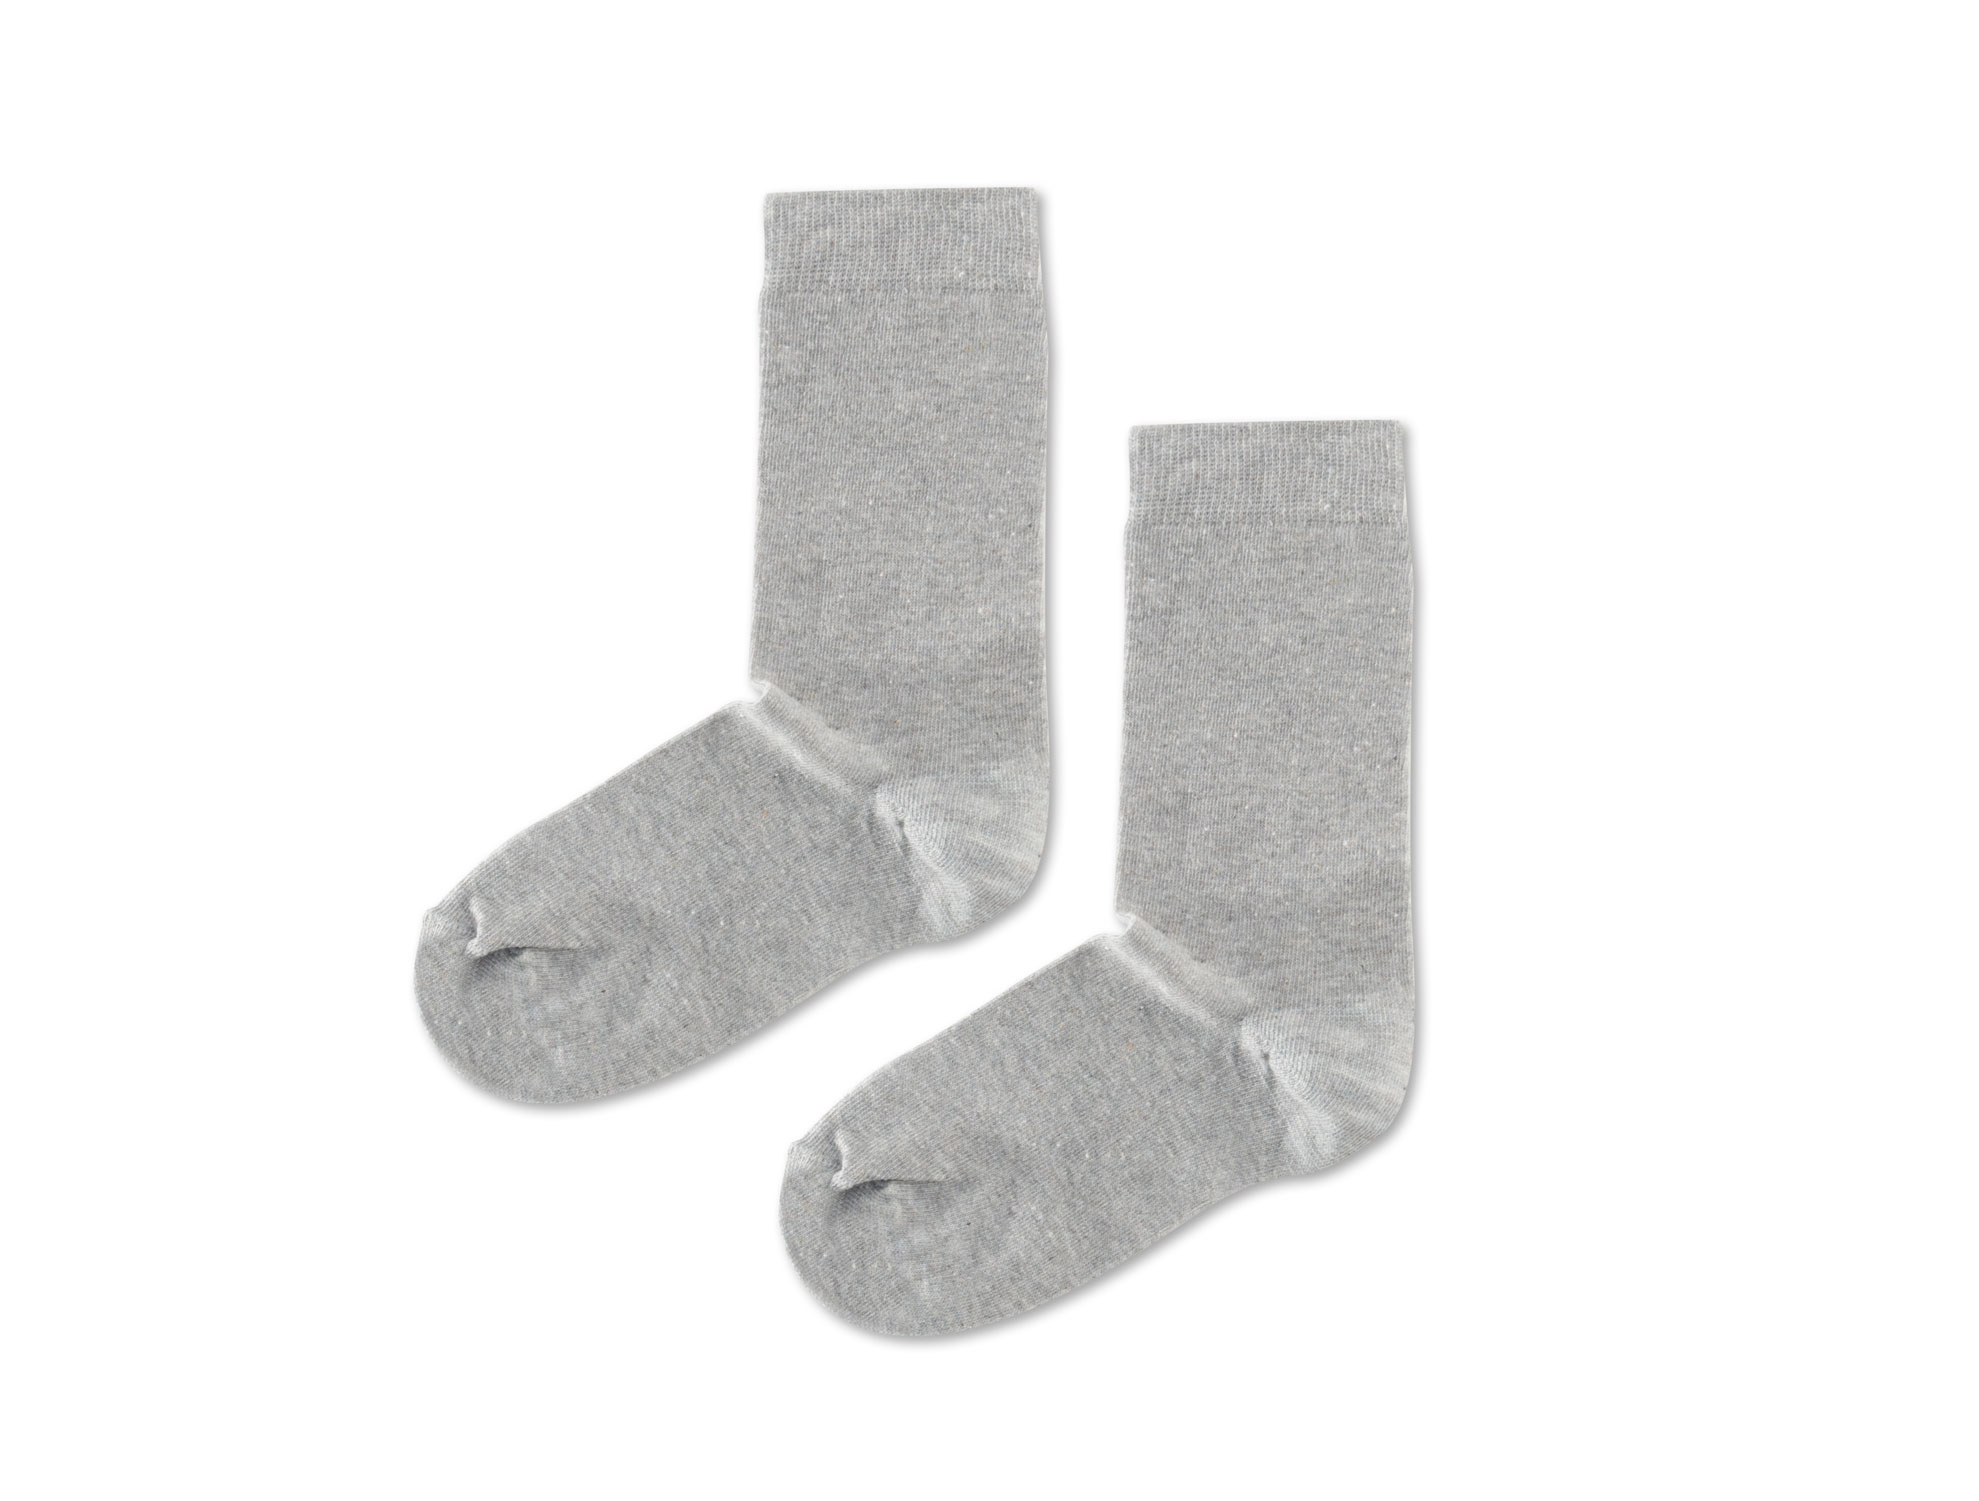  Ekoseli Bayan 3 Lü Soket Çorap